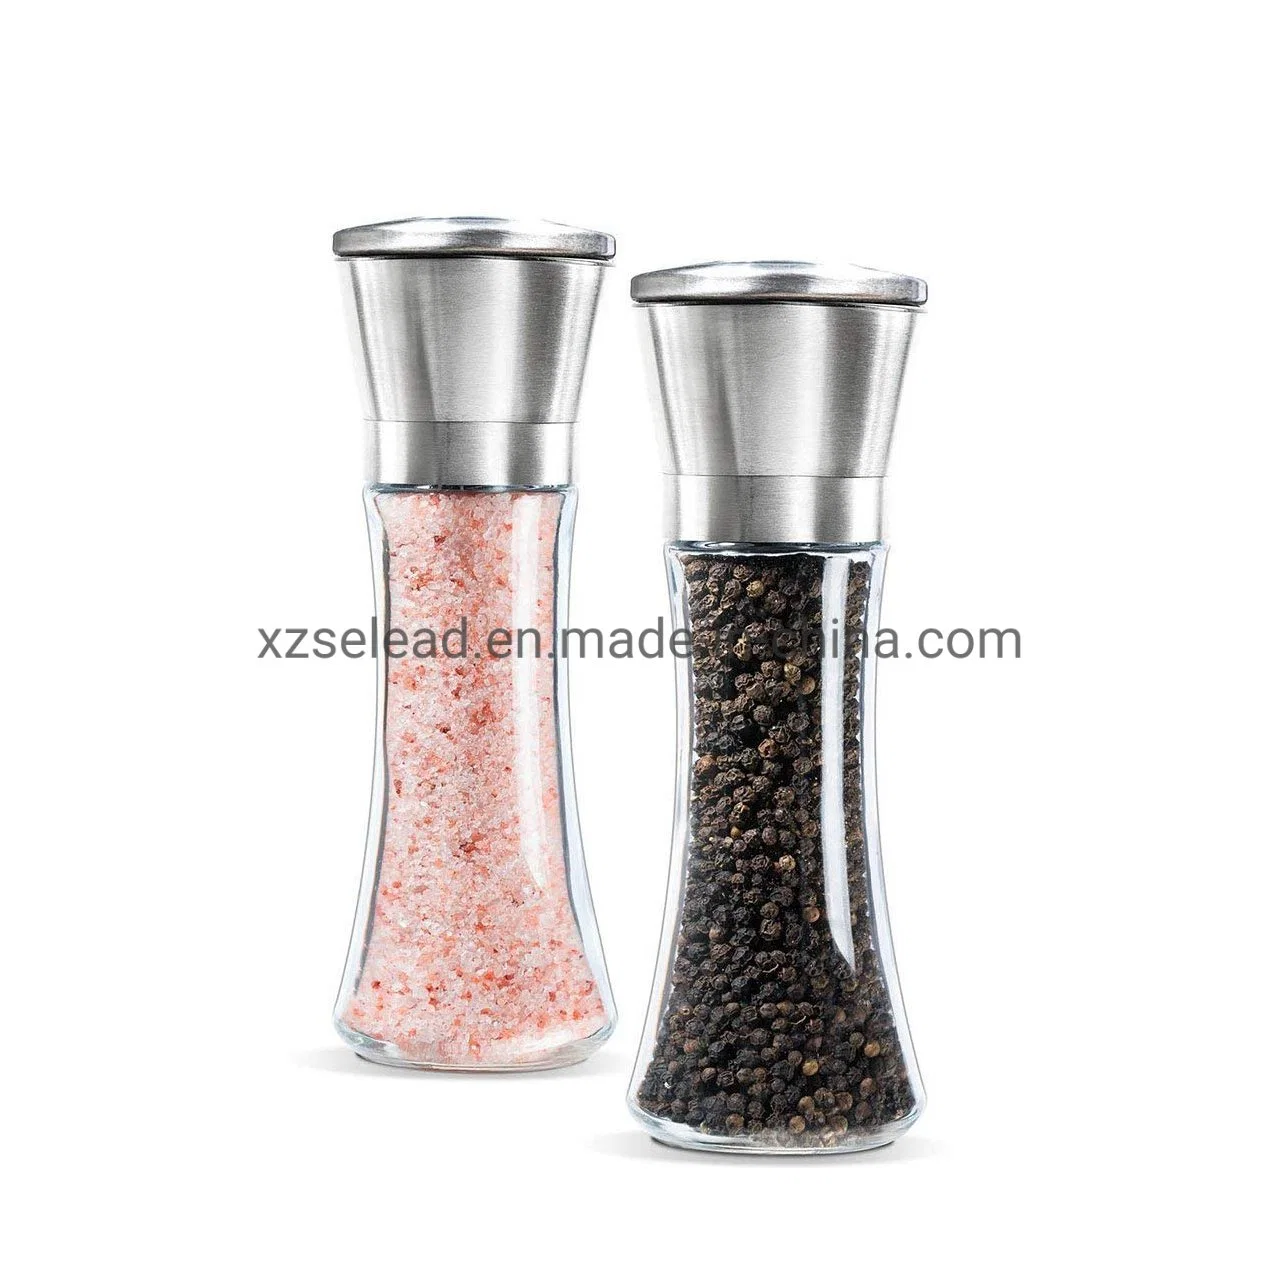 Pakistan Himalayan Pink Salt Grinder 180ml Pepper Bottle with Spice Grinder Cap